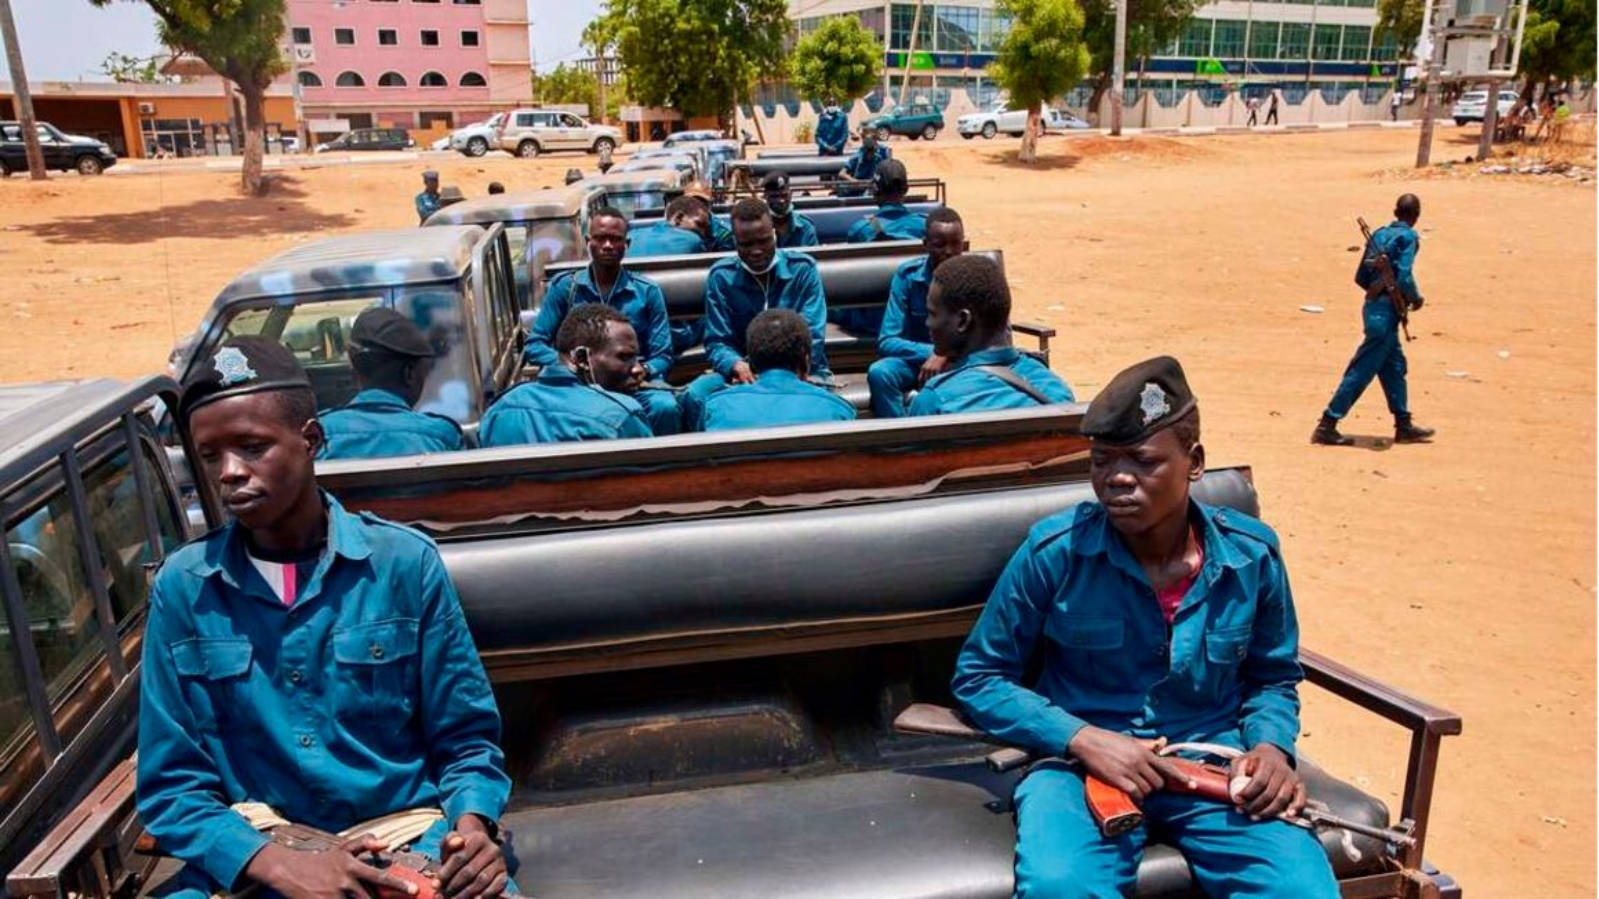 ضباط شرطة جنوب السودان في شاحنة صغيرة أثناء تجمعهم قبل القيام بدورية في شوارع جوبا، جنوب السودان. بتاريخ 9 نيسان/ أبريل 2020.